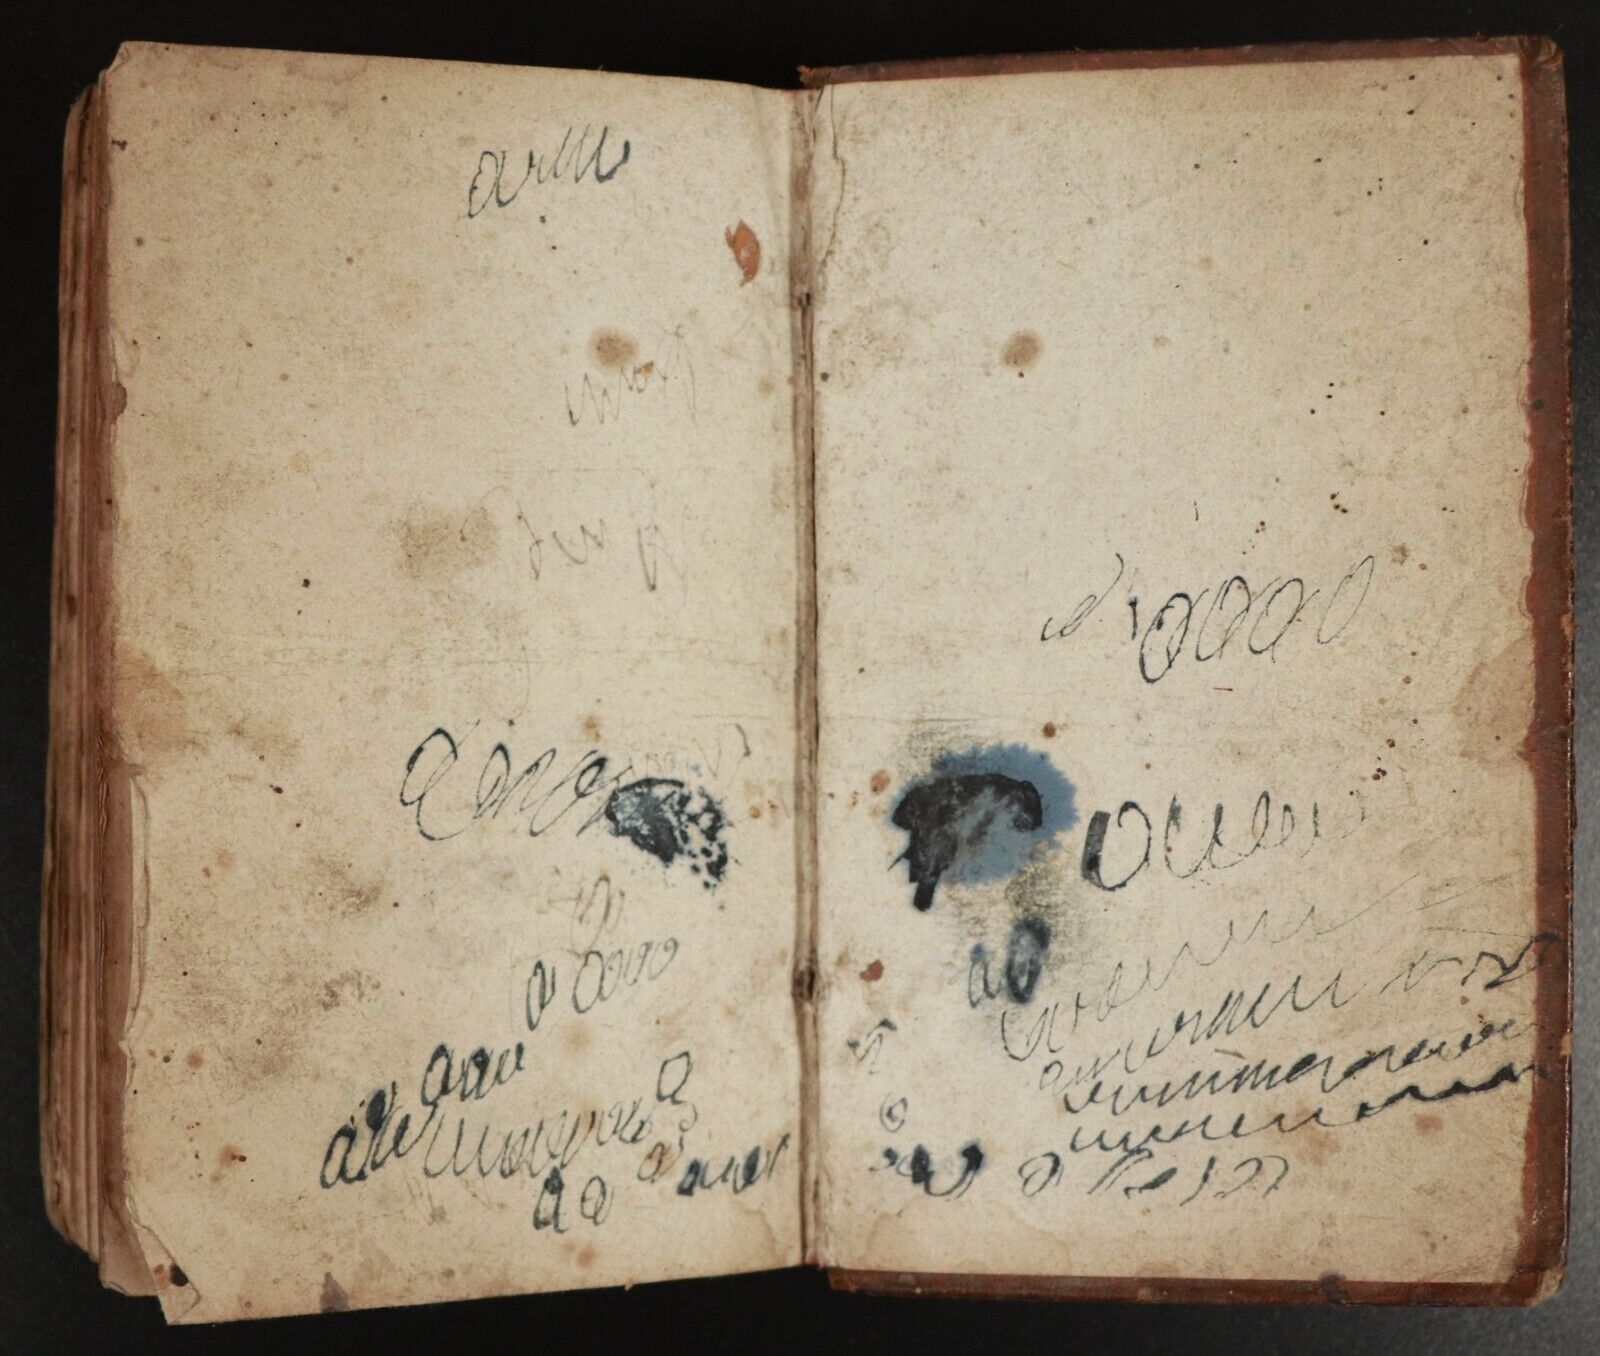 1804 Les Aventures de Télémaque by M. De Fenelon Antiquarian Literature Book